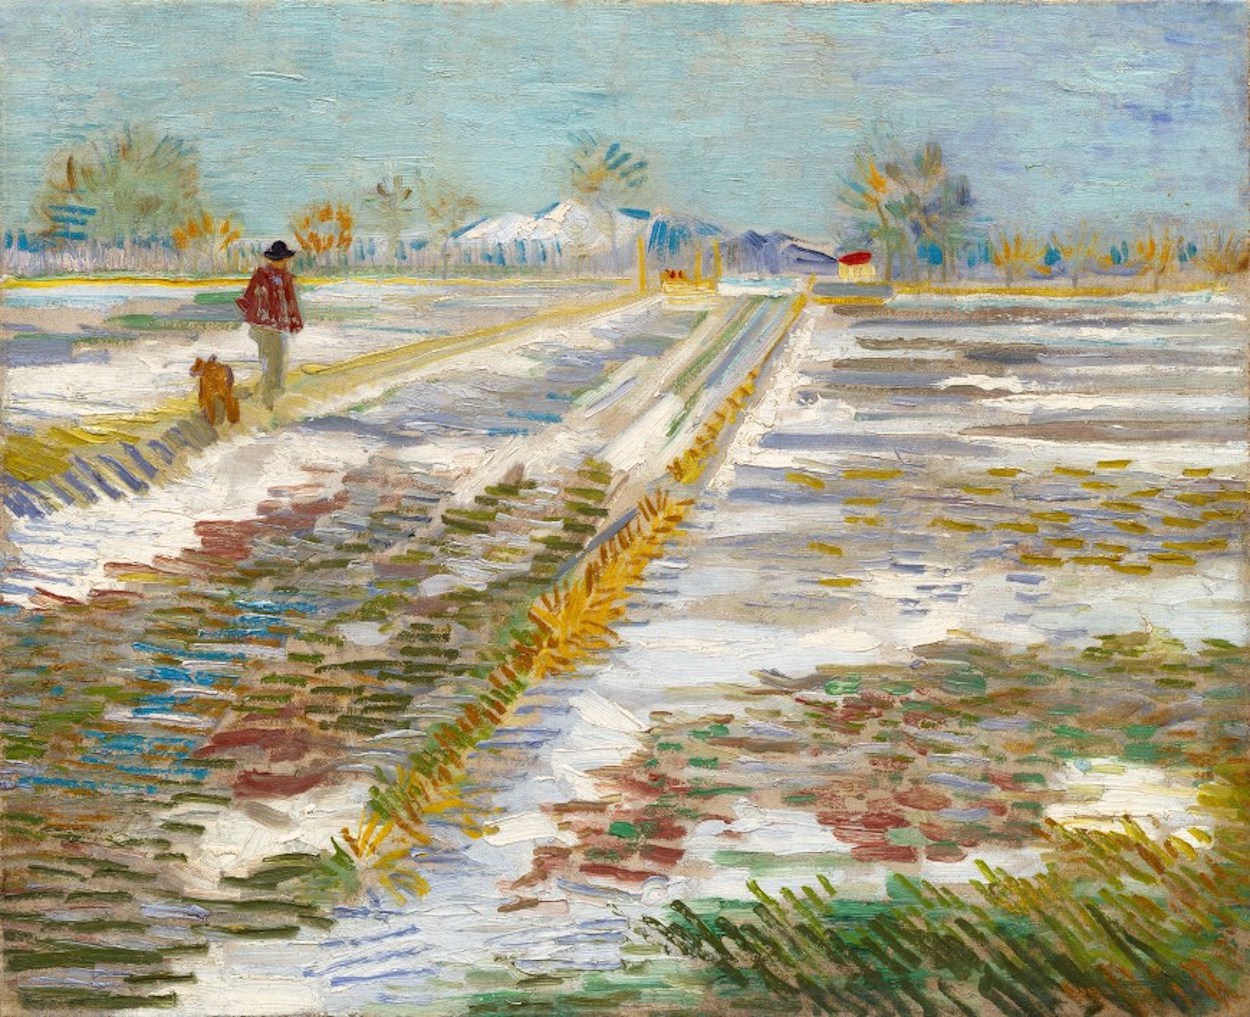 Landscape With Snow by Vincent van Gogh - 1888 - 38 x 46 cm Solomon R. Guggenheim Museum